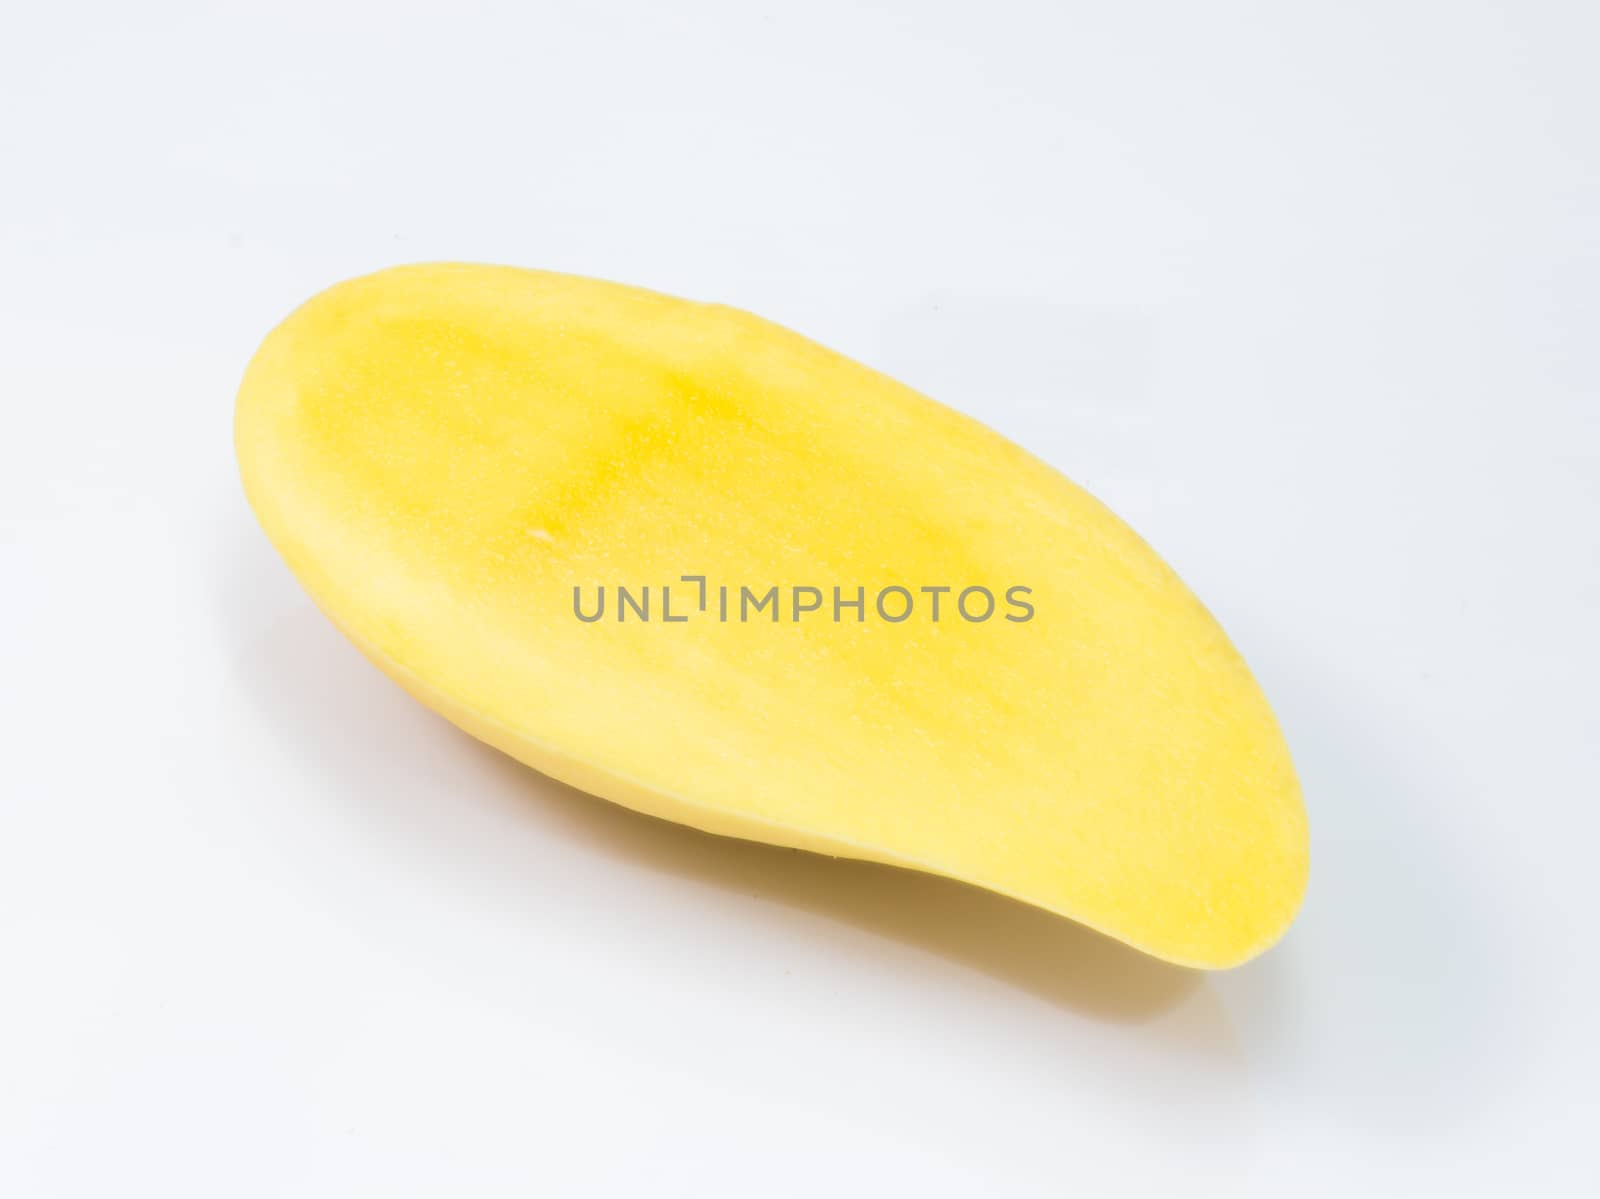 fresh delicious yellow mango isolated  on white background